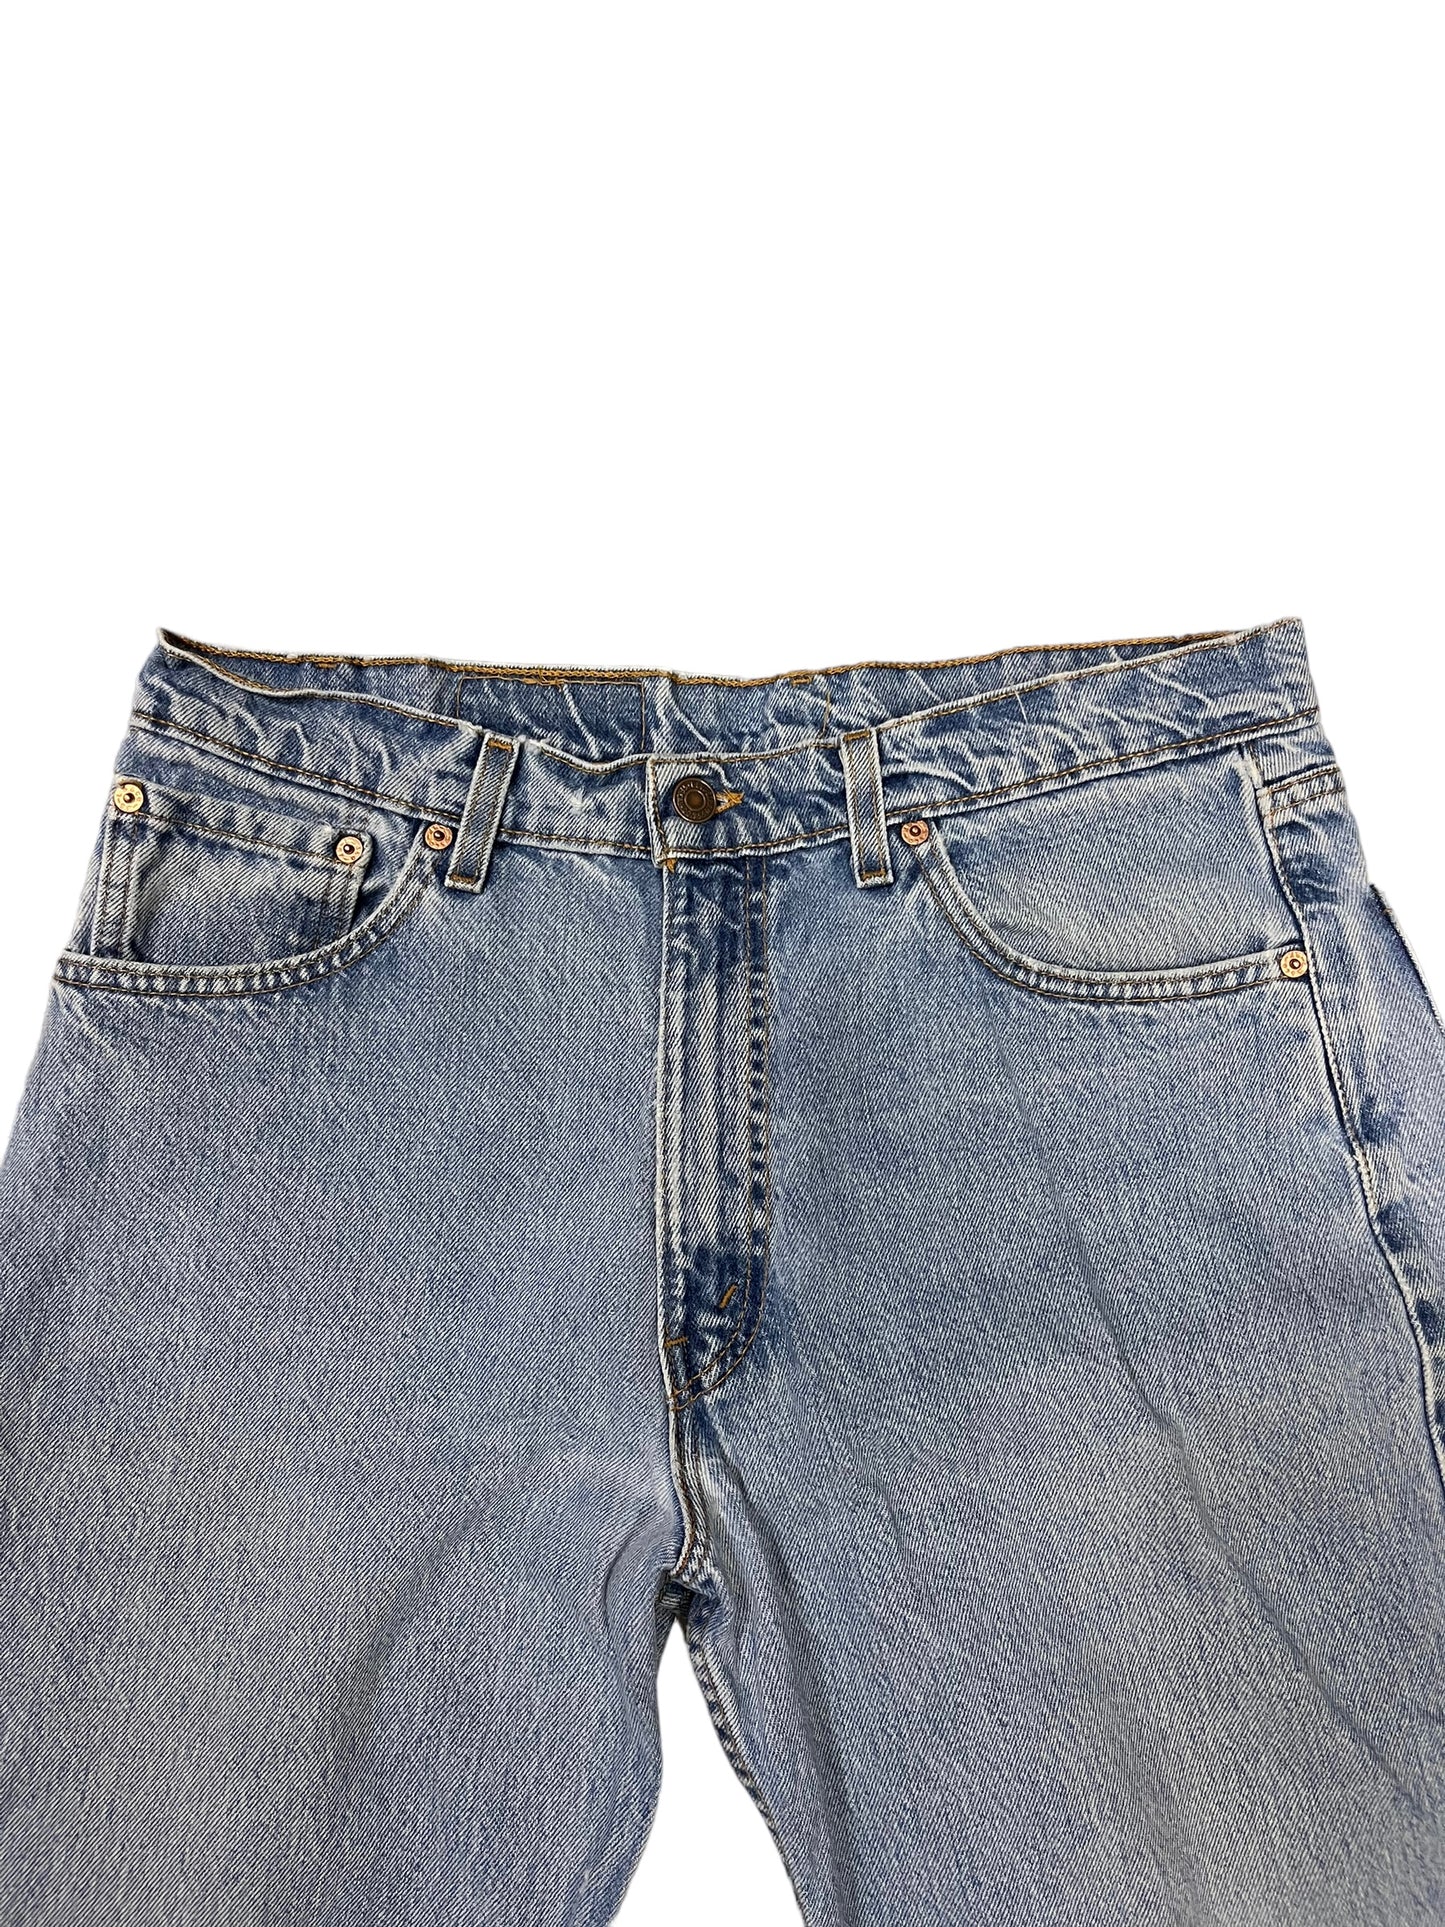 (34W x 32L) Vintage Levi’s 565 Jeans